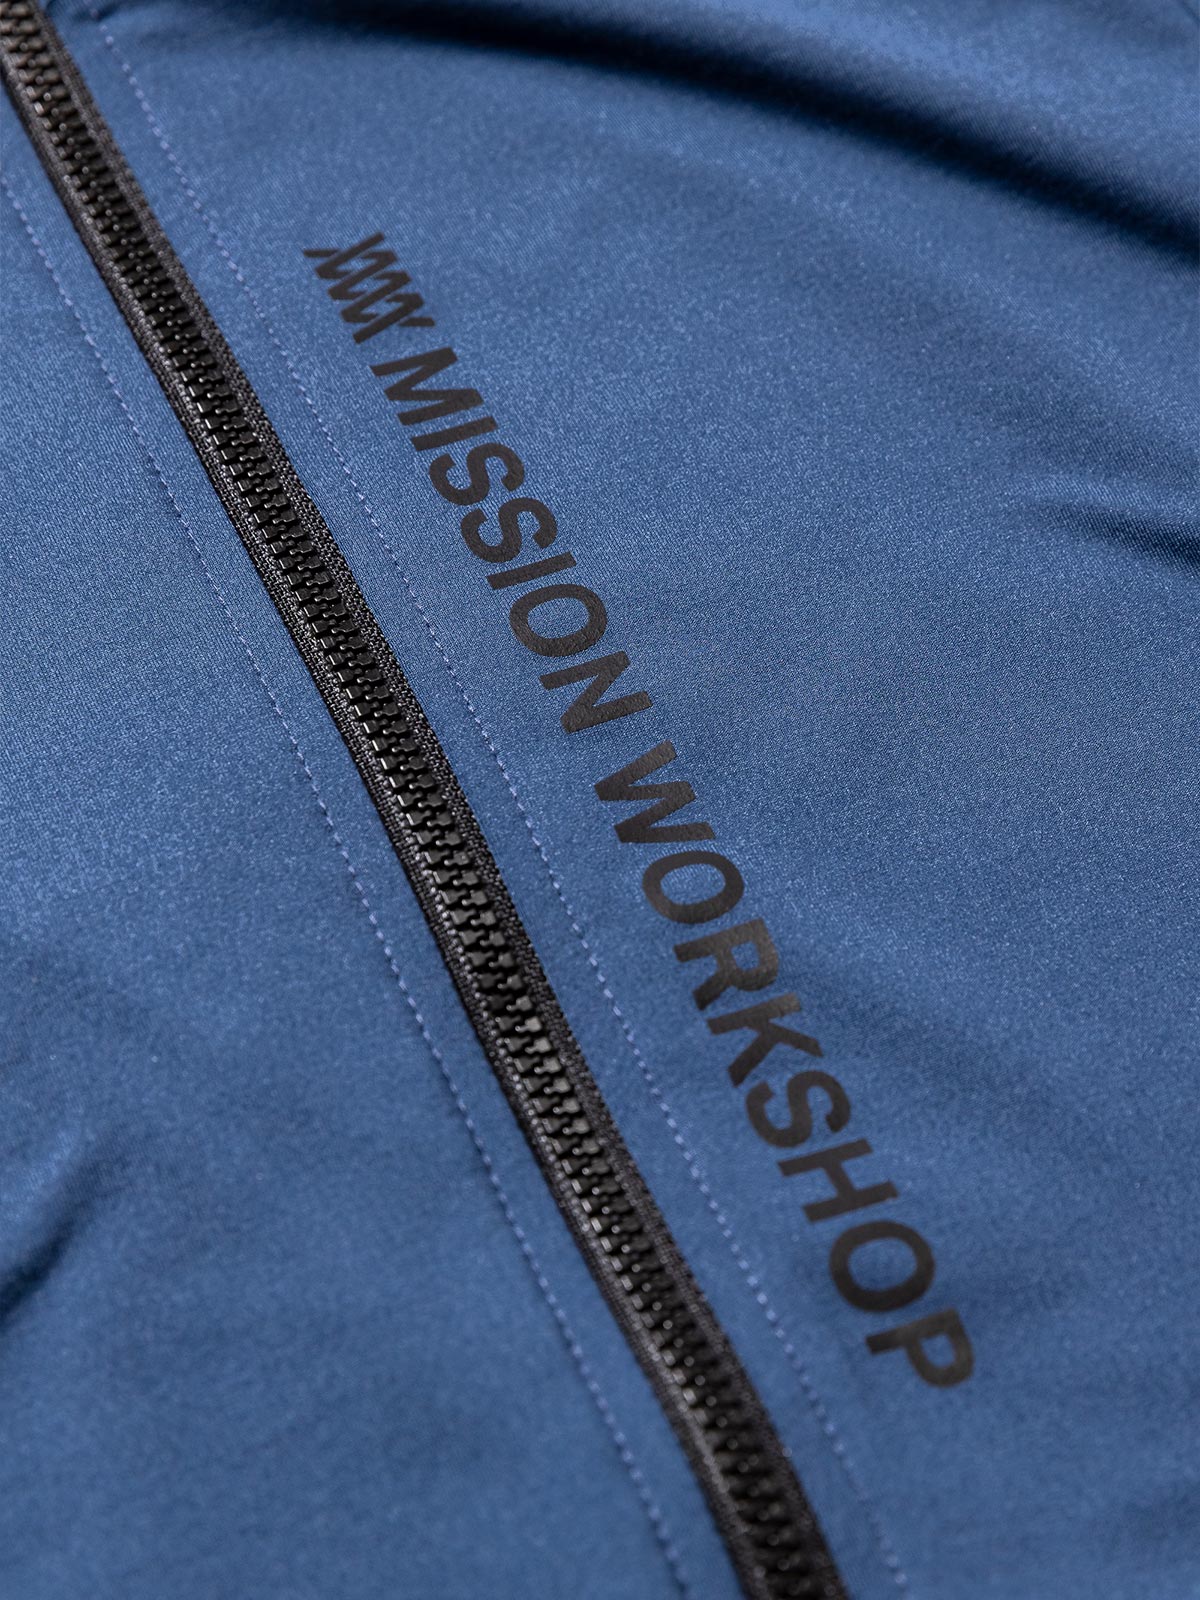 Mission Pro Jersey : LS Women's by Mission Workshop - Weerbestendige tassen & technische kleding - San Francisco & Los Angeles - Gemaakt om te verdragen - Voor altijd gegarandeerd